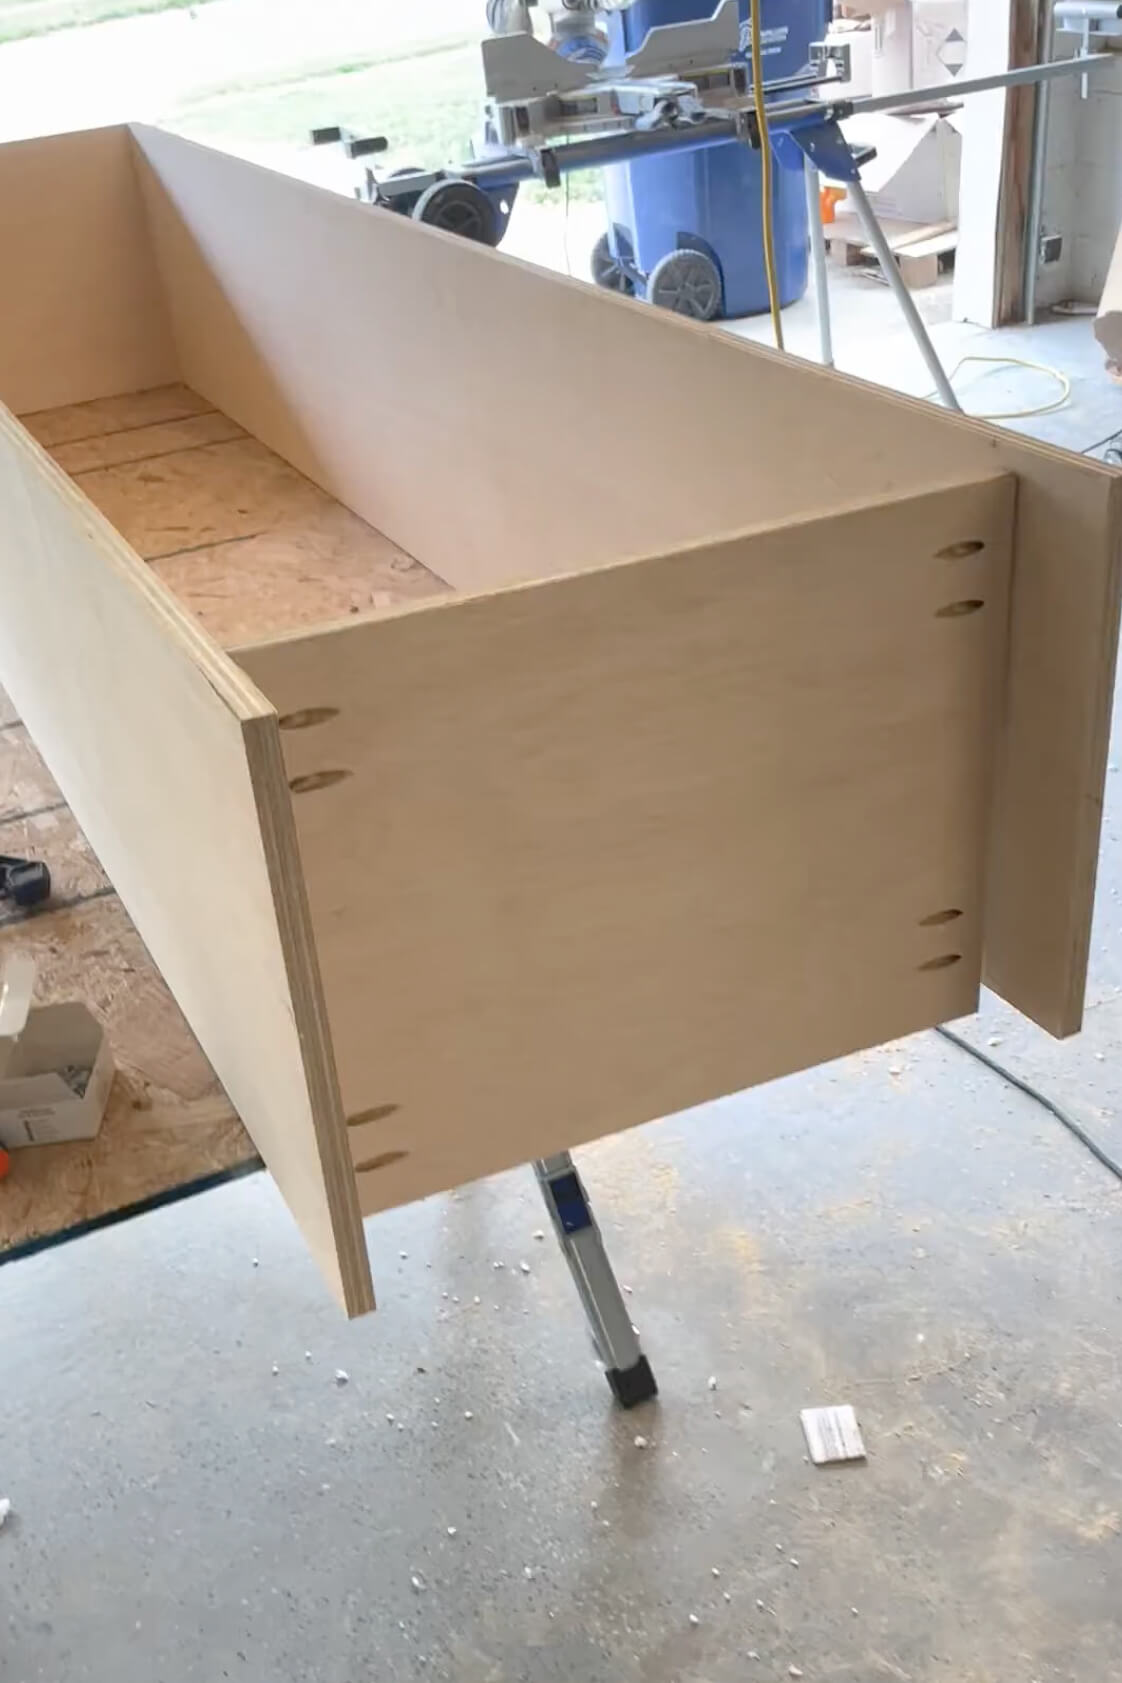 Building a DIY pantry shelf.